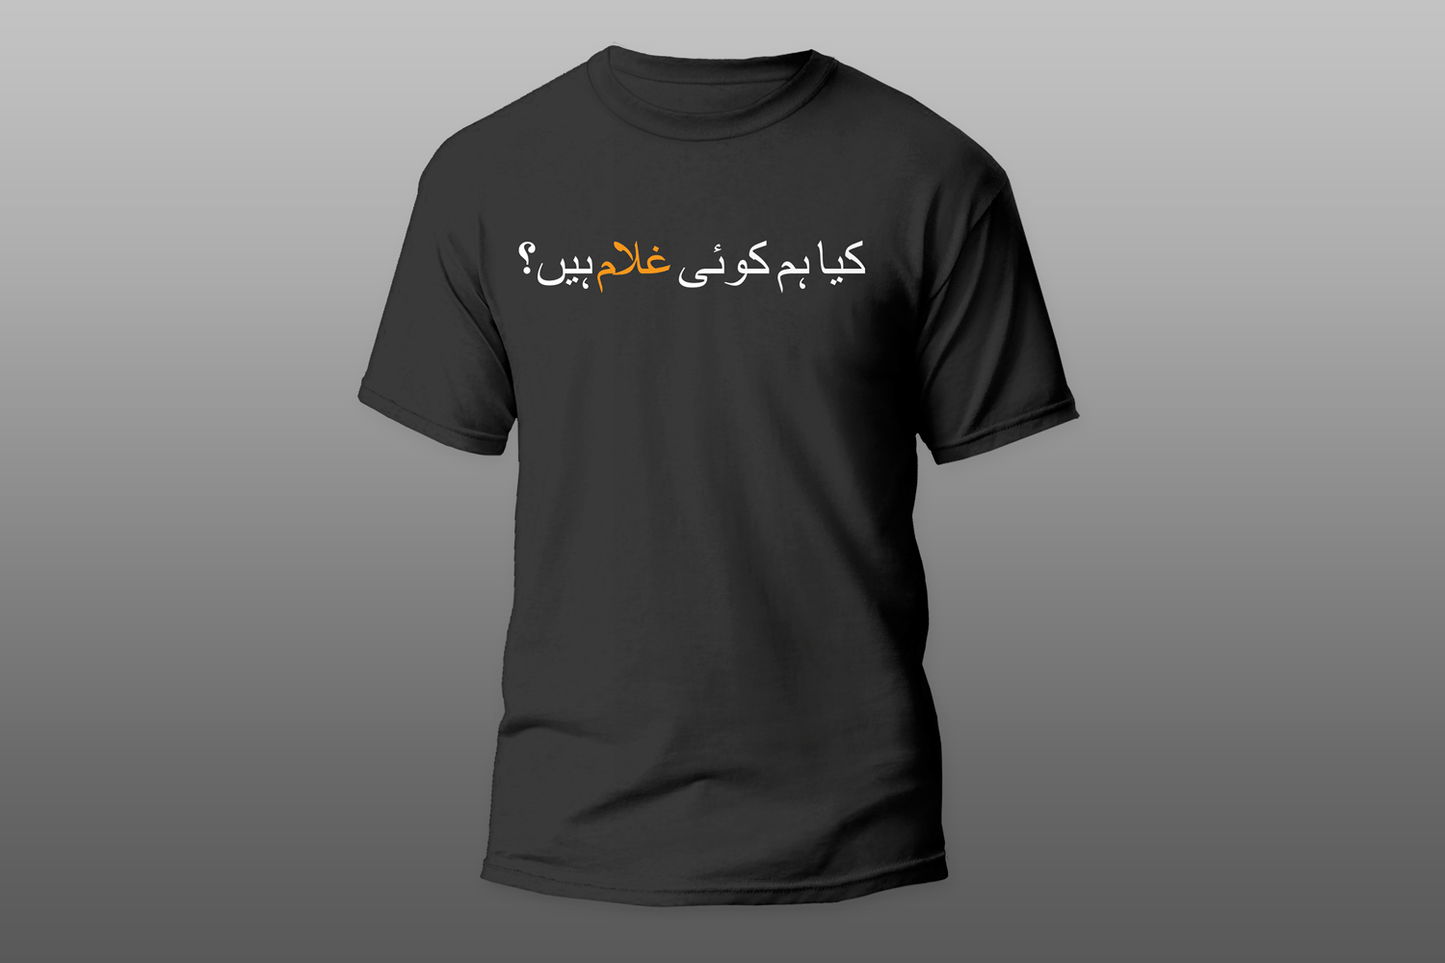 Kya Hum koi Ghulam hain? T-Shirt 2